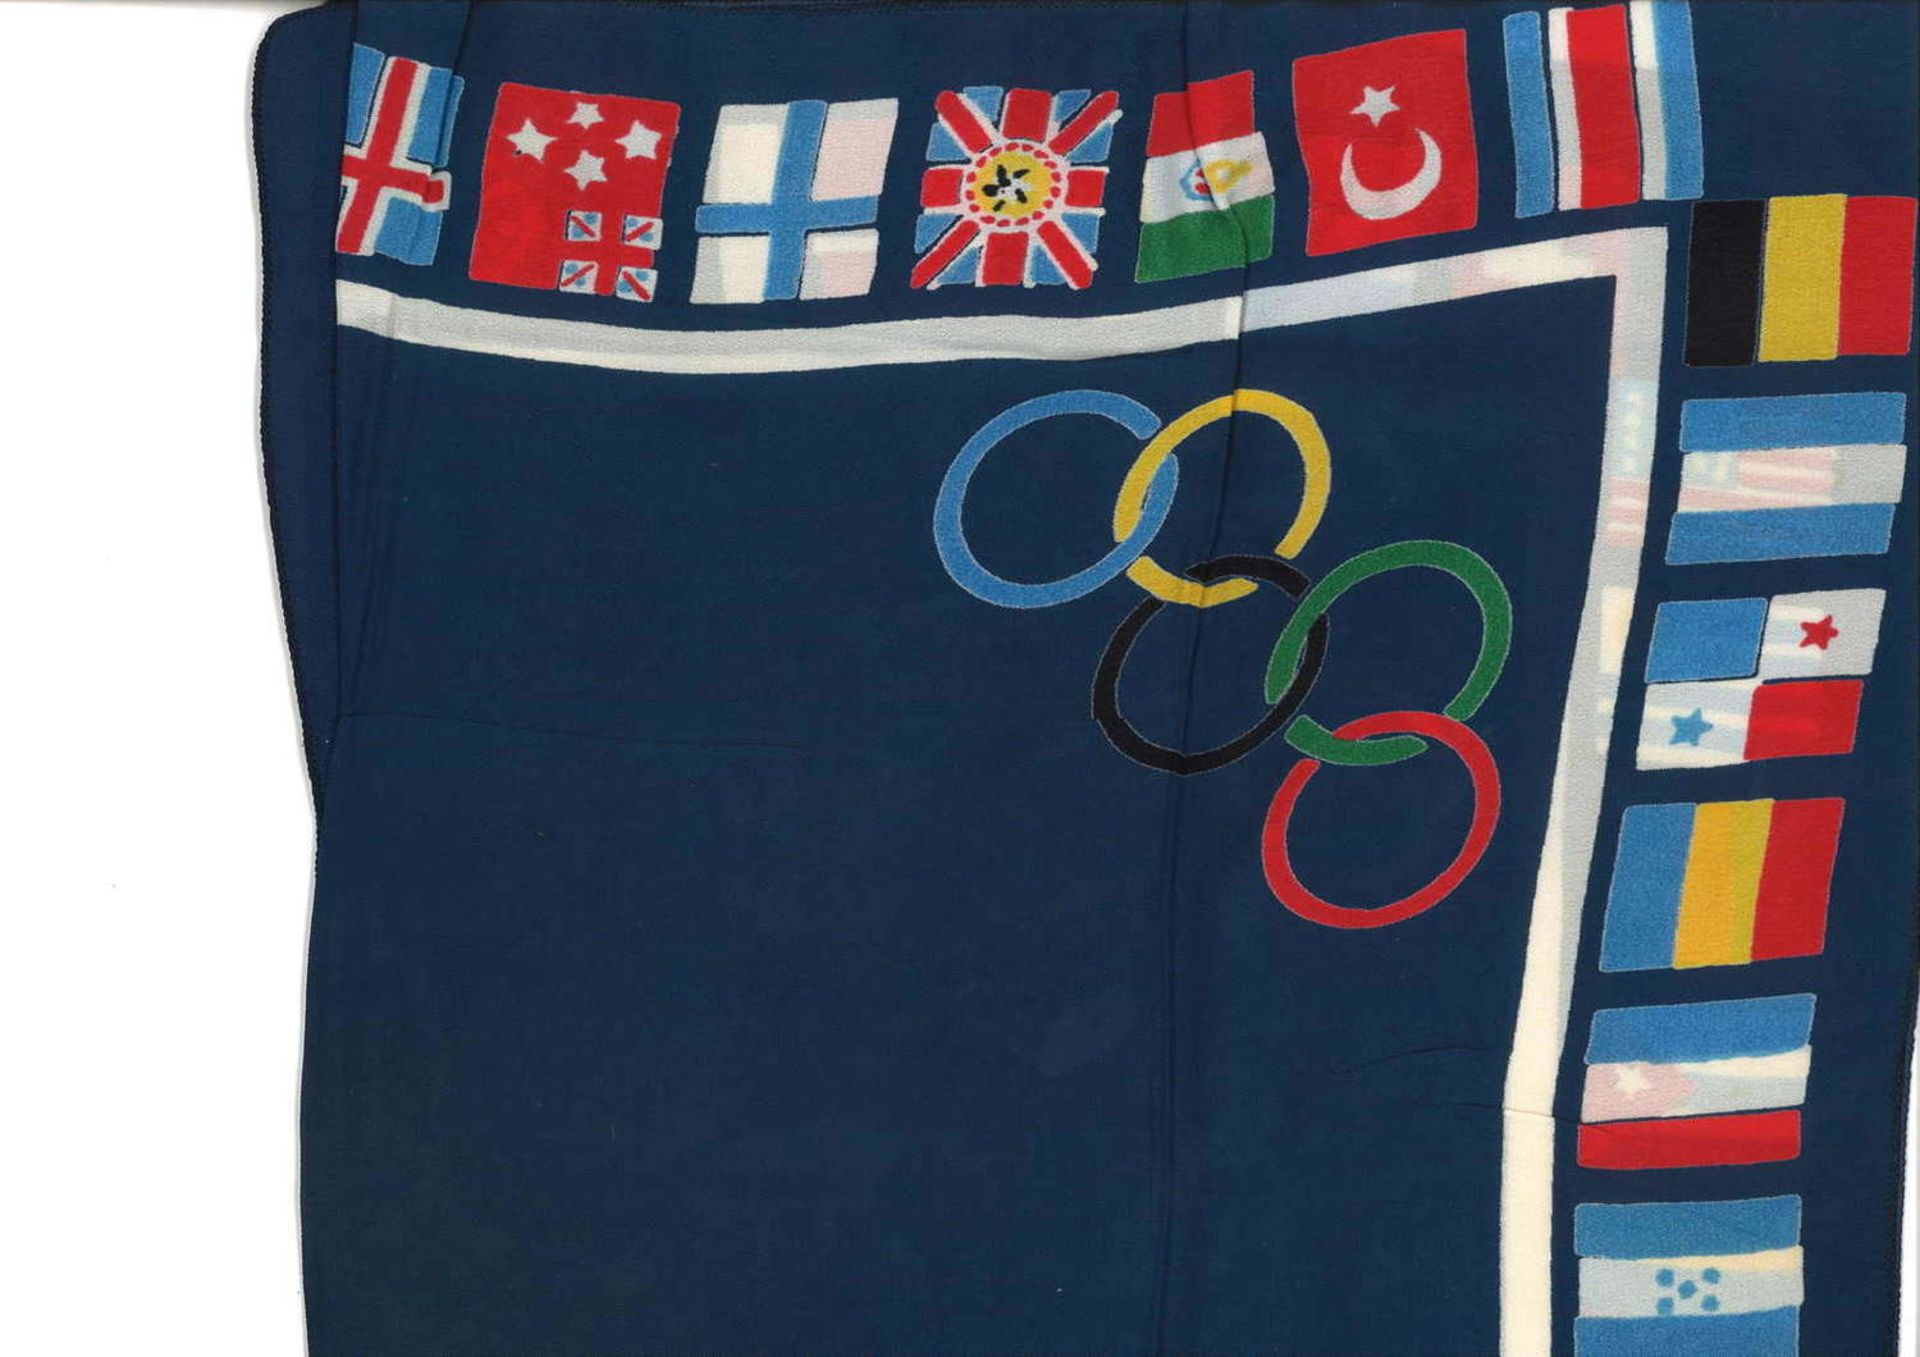 1 Seiden - Schal oder Kopftuch mit den teilnehmenden Länder der Olympia 1936 - Maße: 70x70 cm1